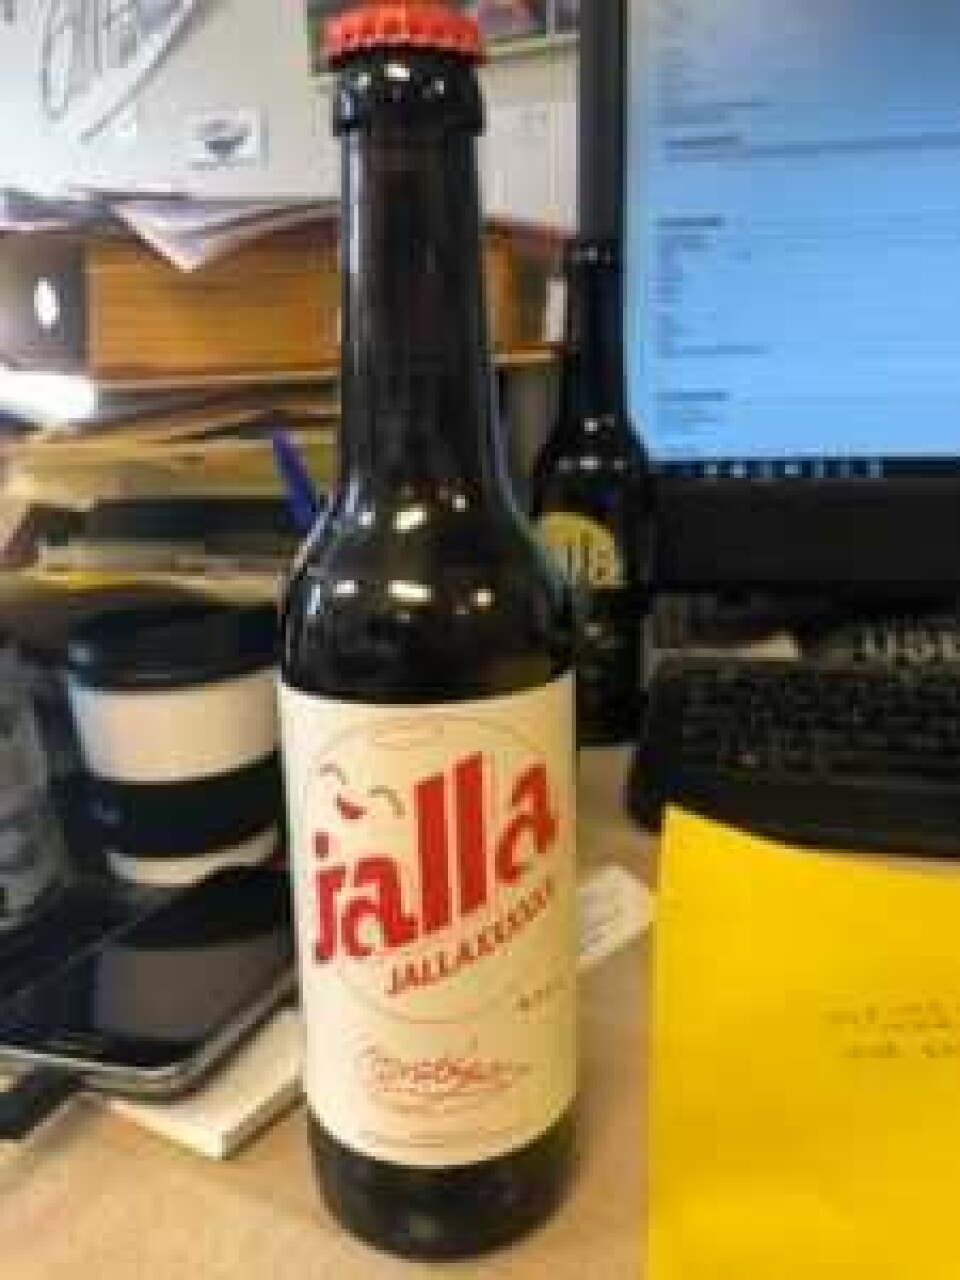 X-ene i JALLAXXXXXX får det til å se ut som navnet Jallasprite er sensurert, mener Coca-Colas advokat. Foto: O. Mathisen